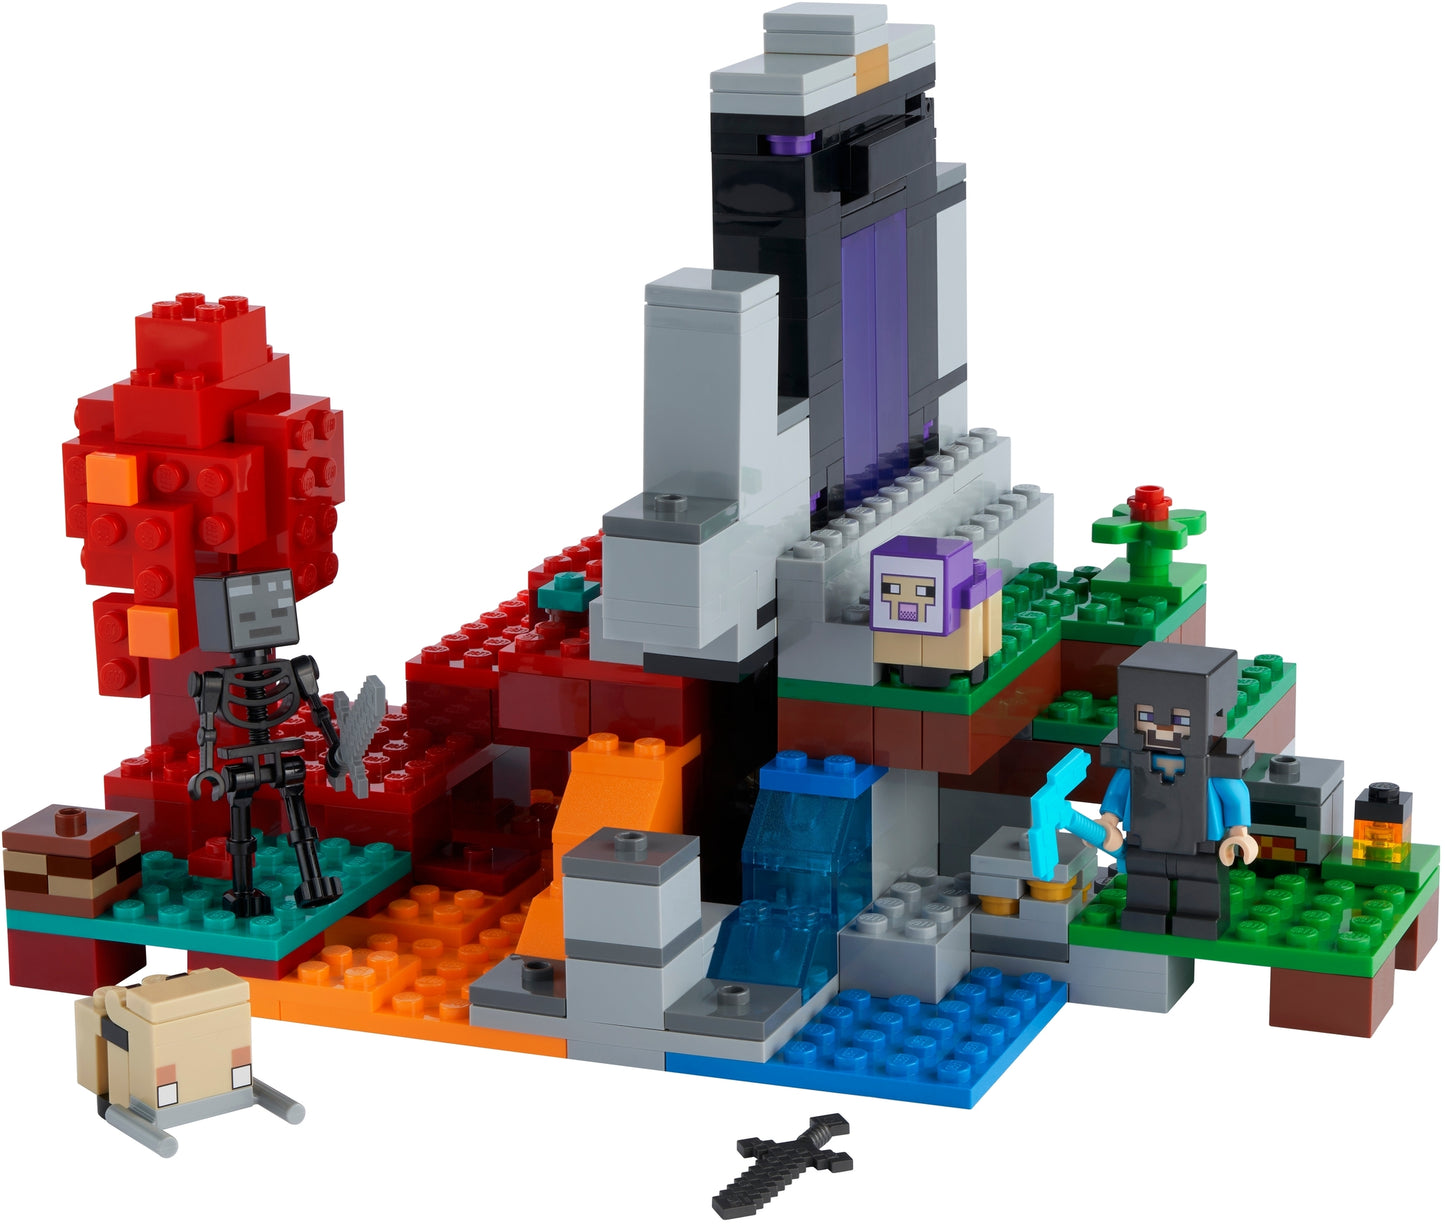 21172 LEGO Minecraft - Il Portale in Rovina